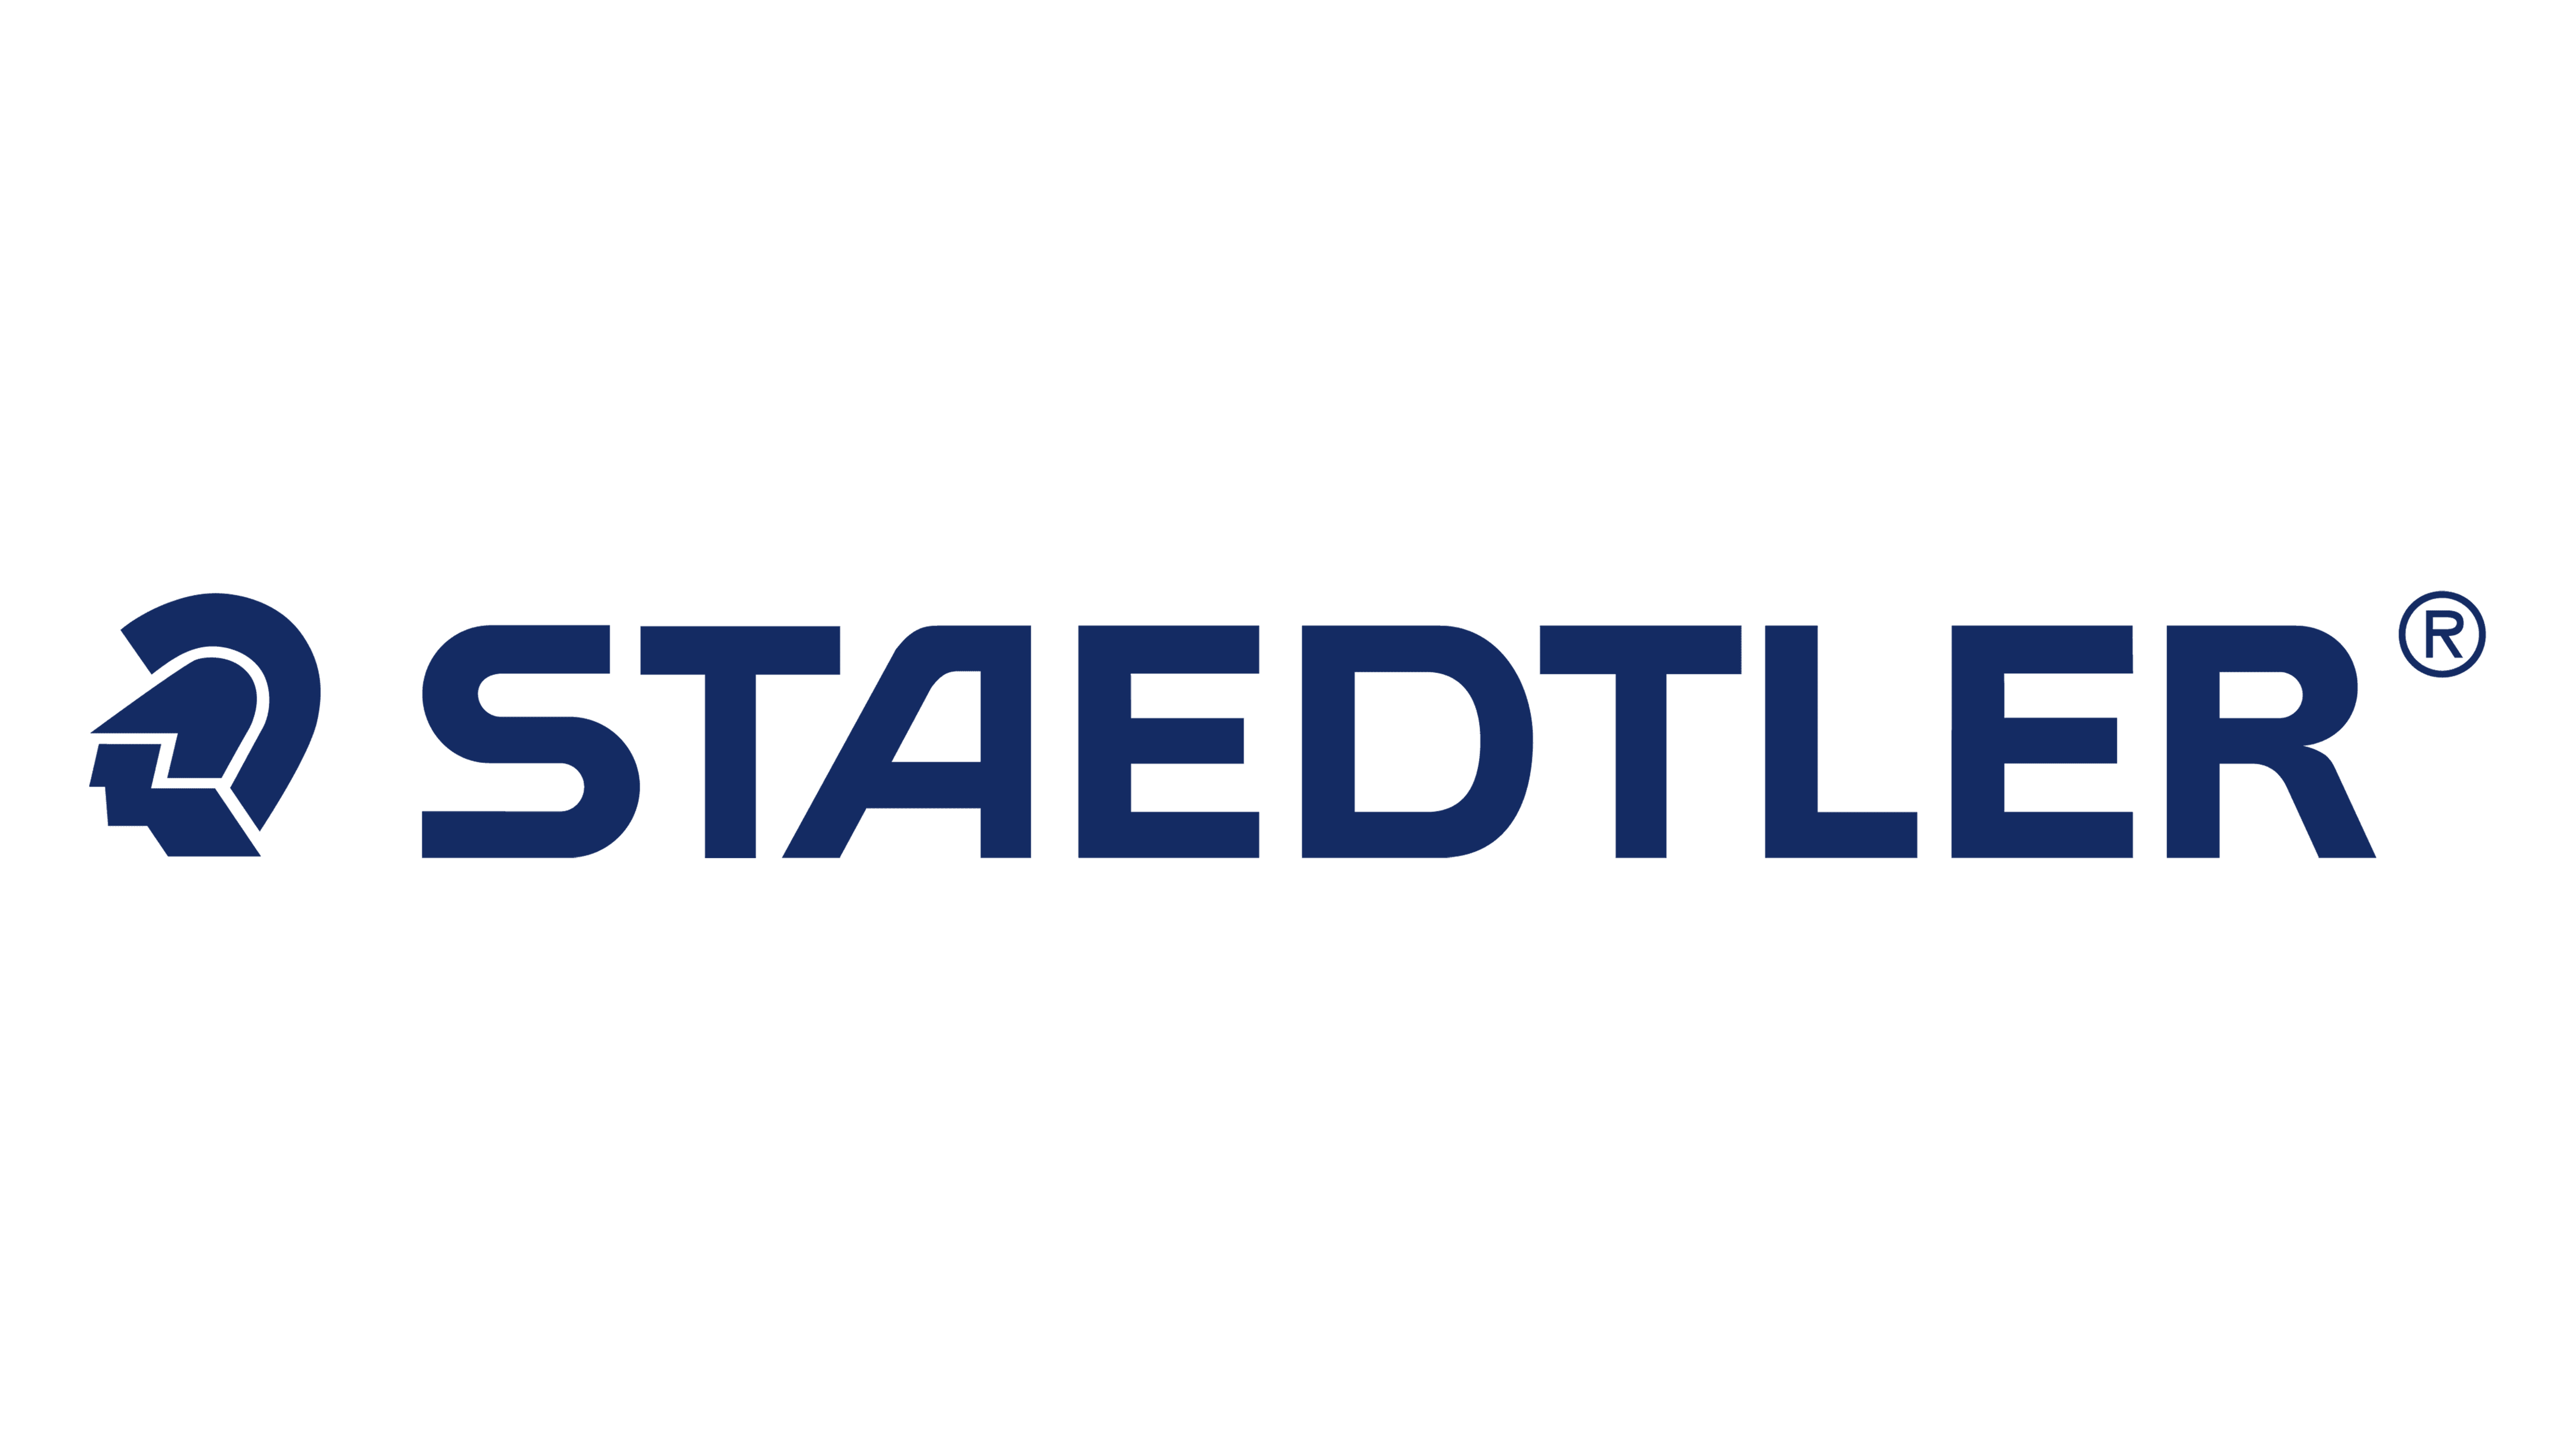 Staedtler-logo